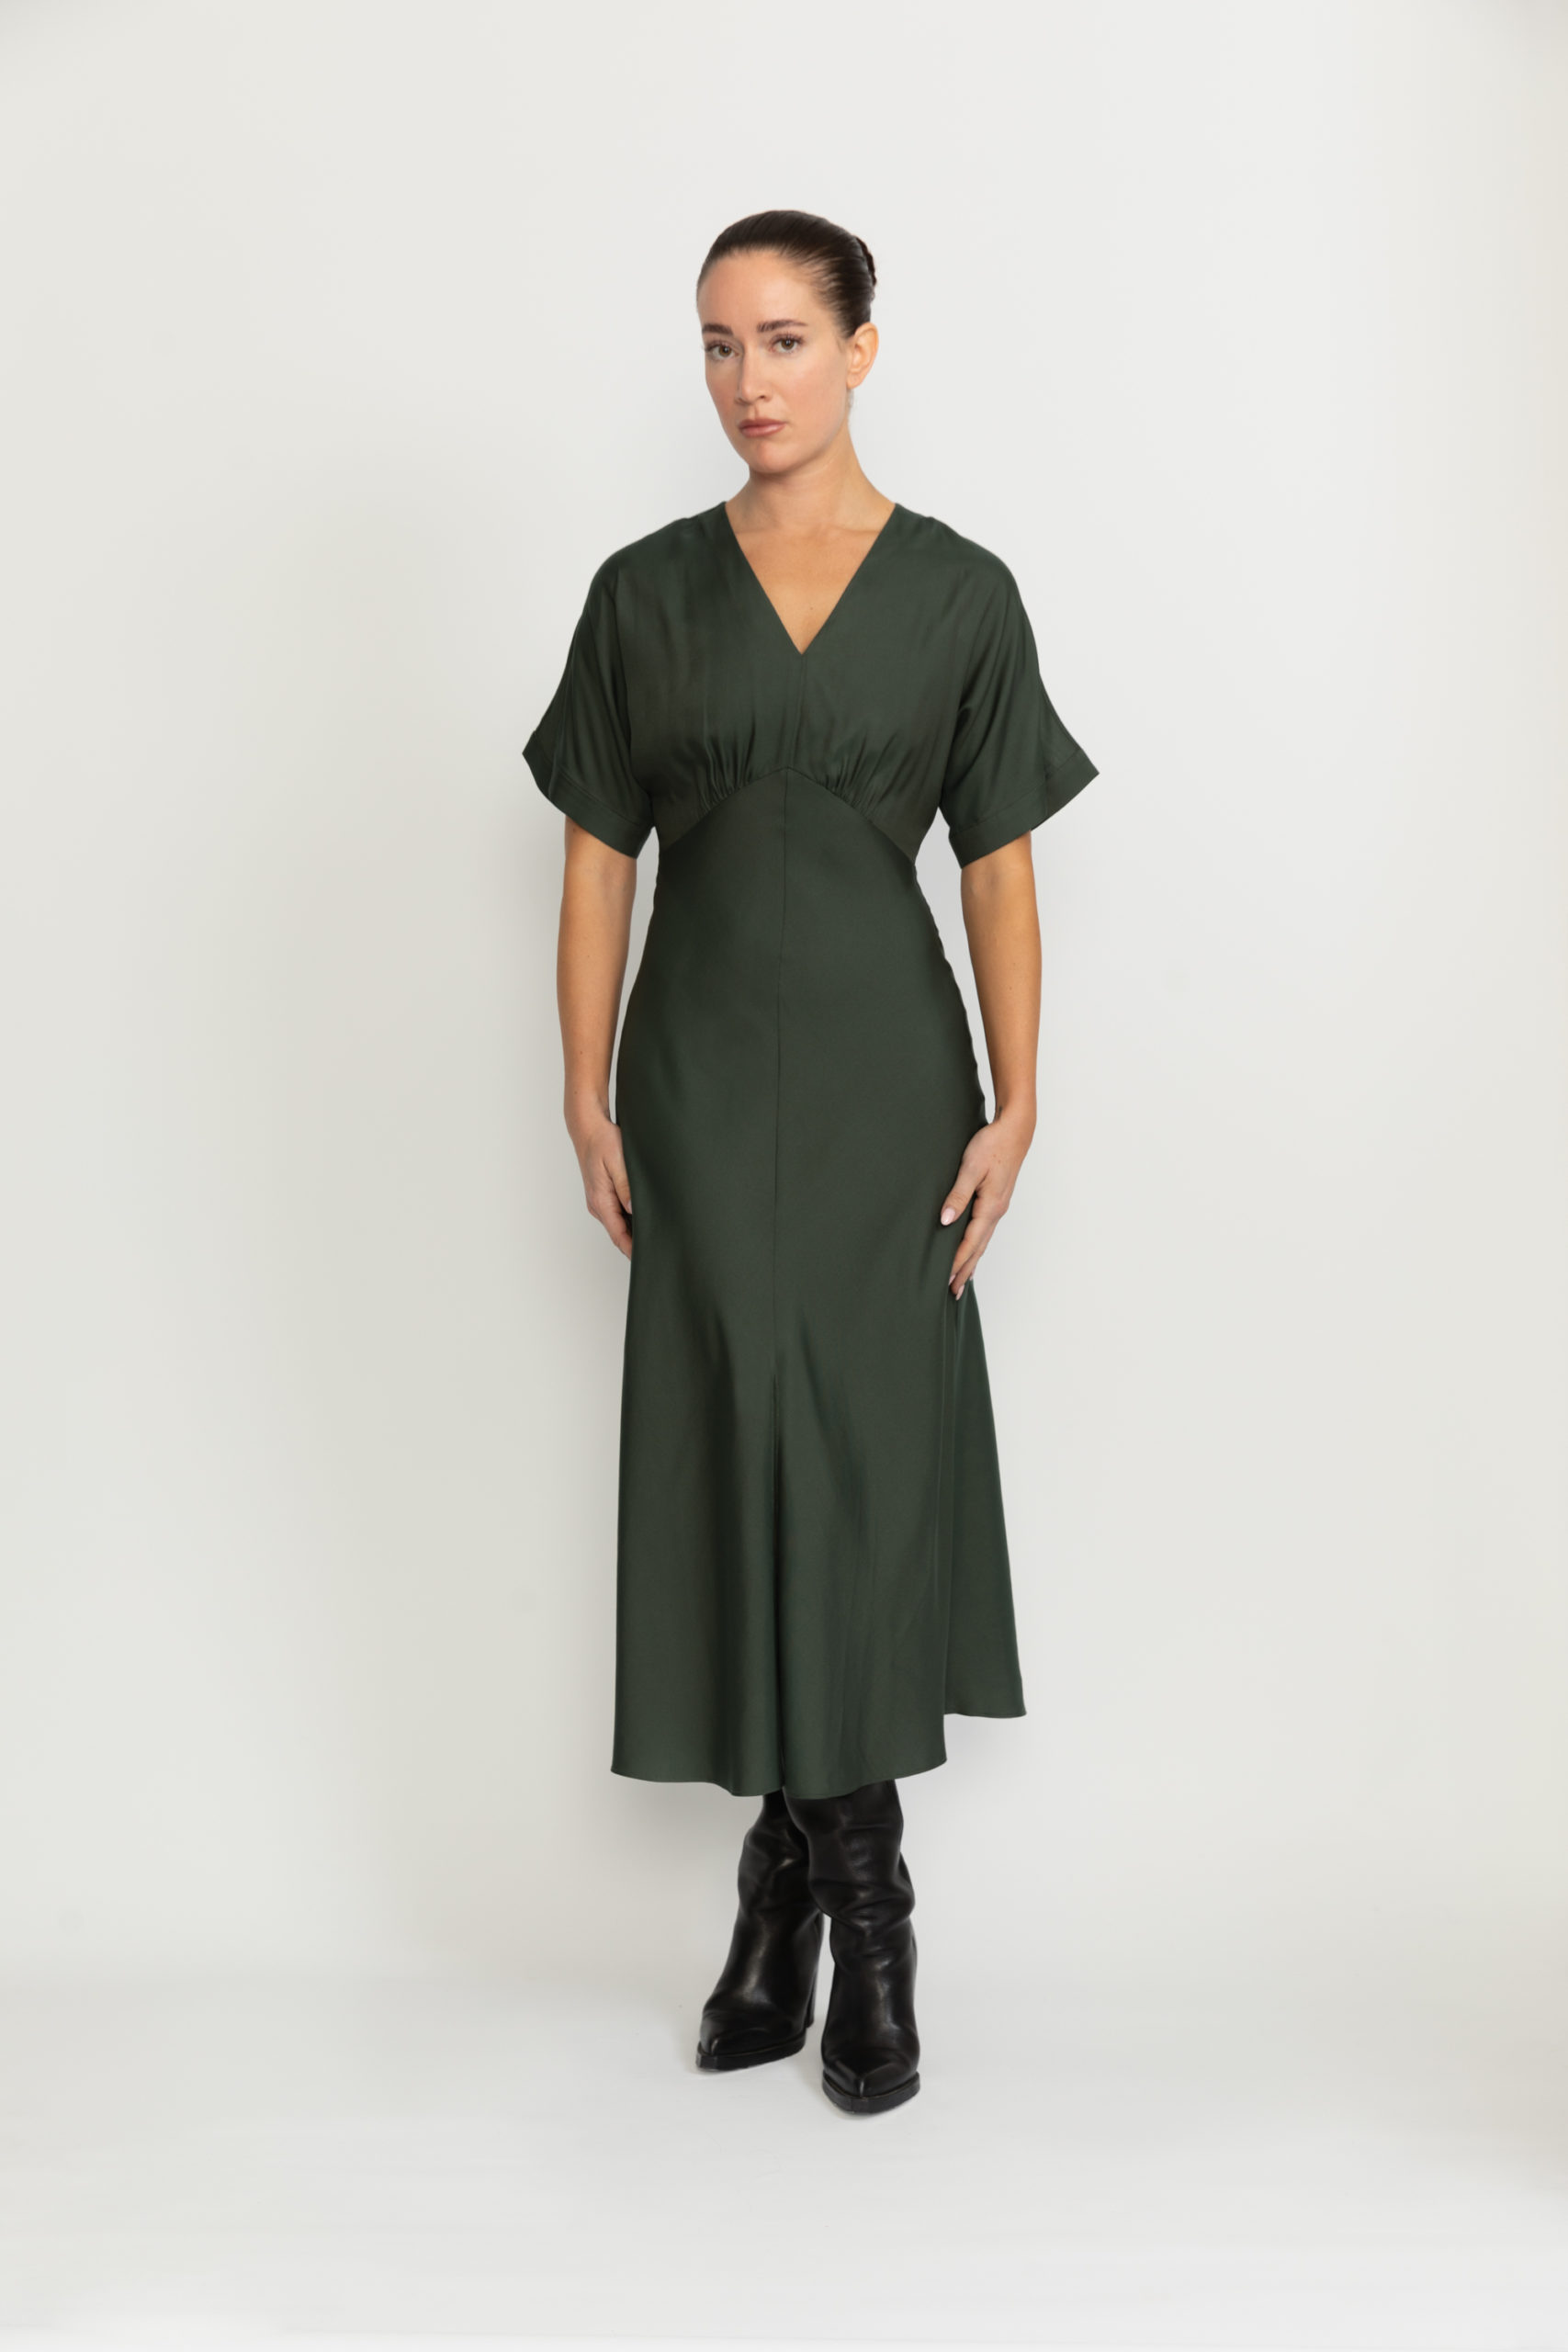 Bologna Dress – Bologna Forest Green A-line Flare Dress0